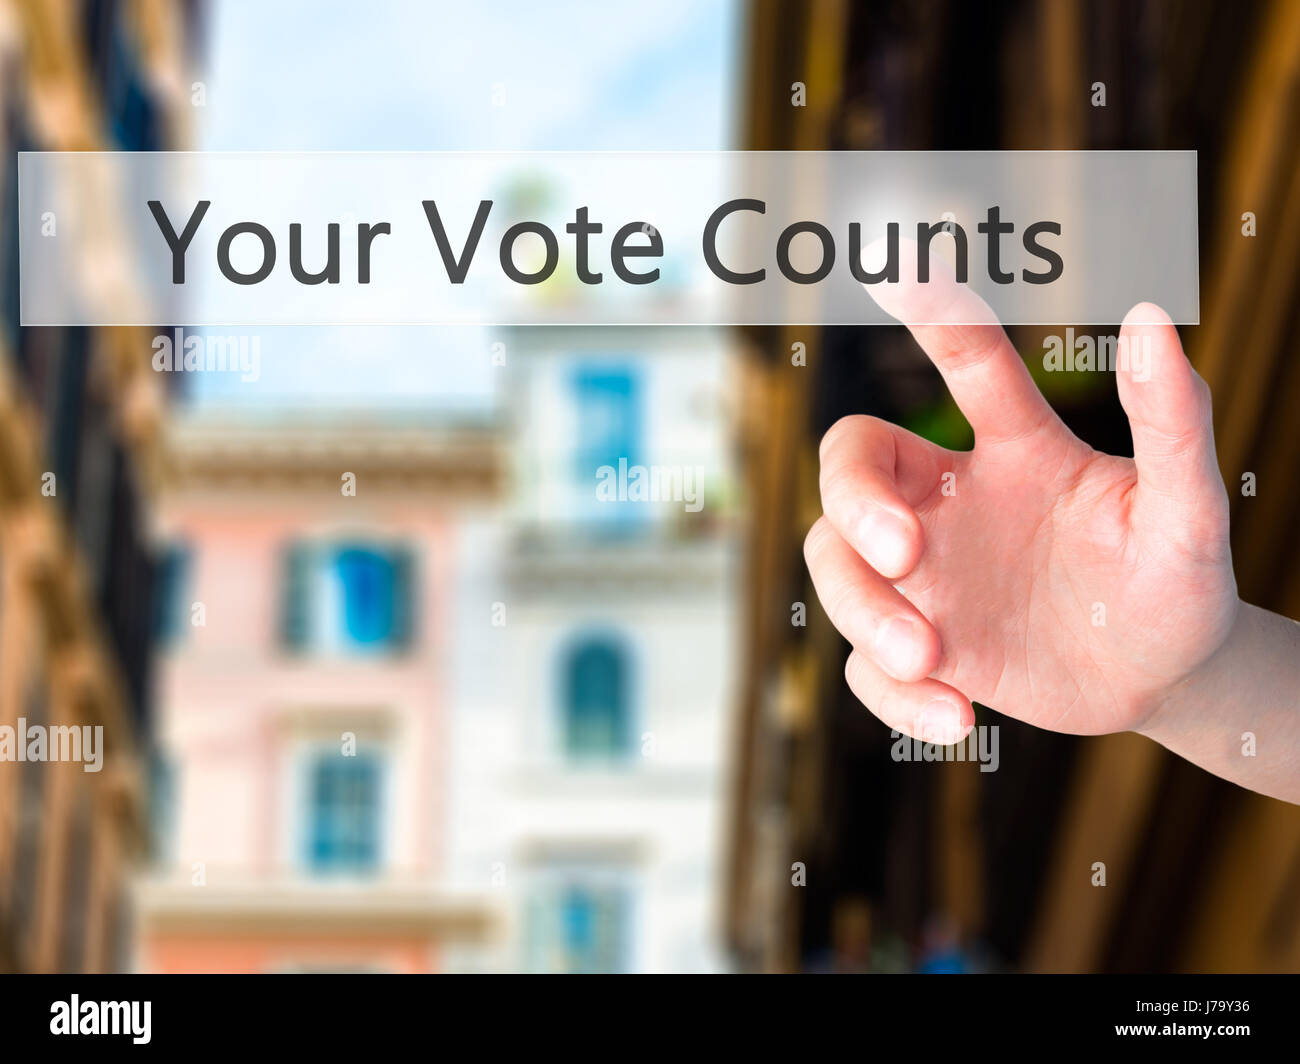 Votre vote compte - part en appuyant sur un bouton sur l'arrière-plan flou concept . Le commerce, la technologie, internet concept. Stock Photo Banque D'Images